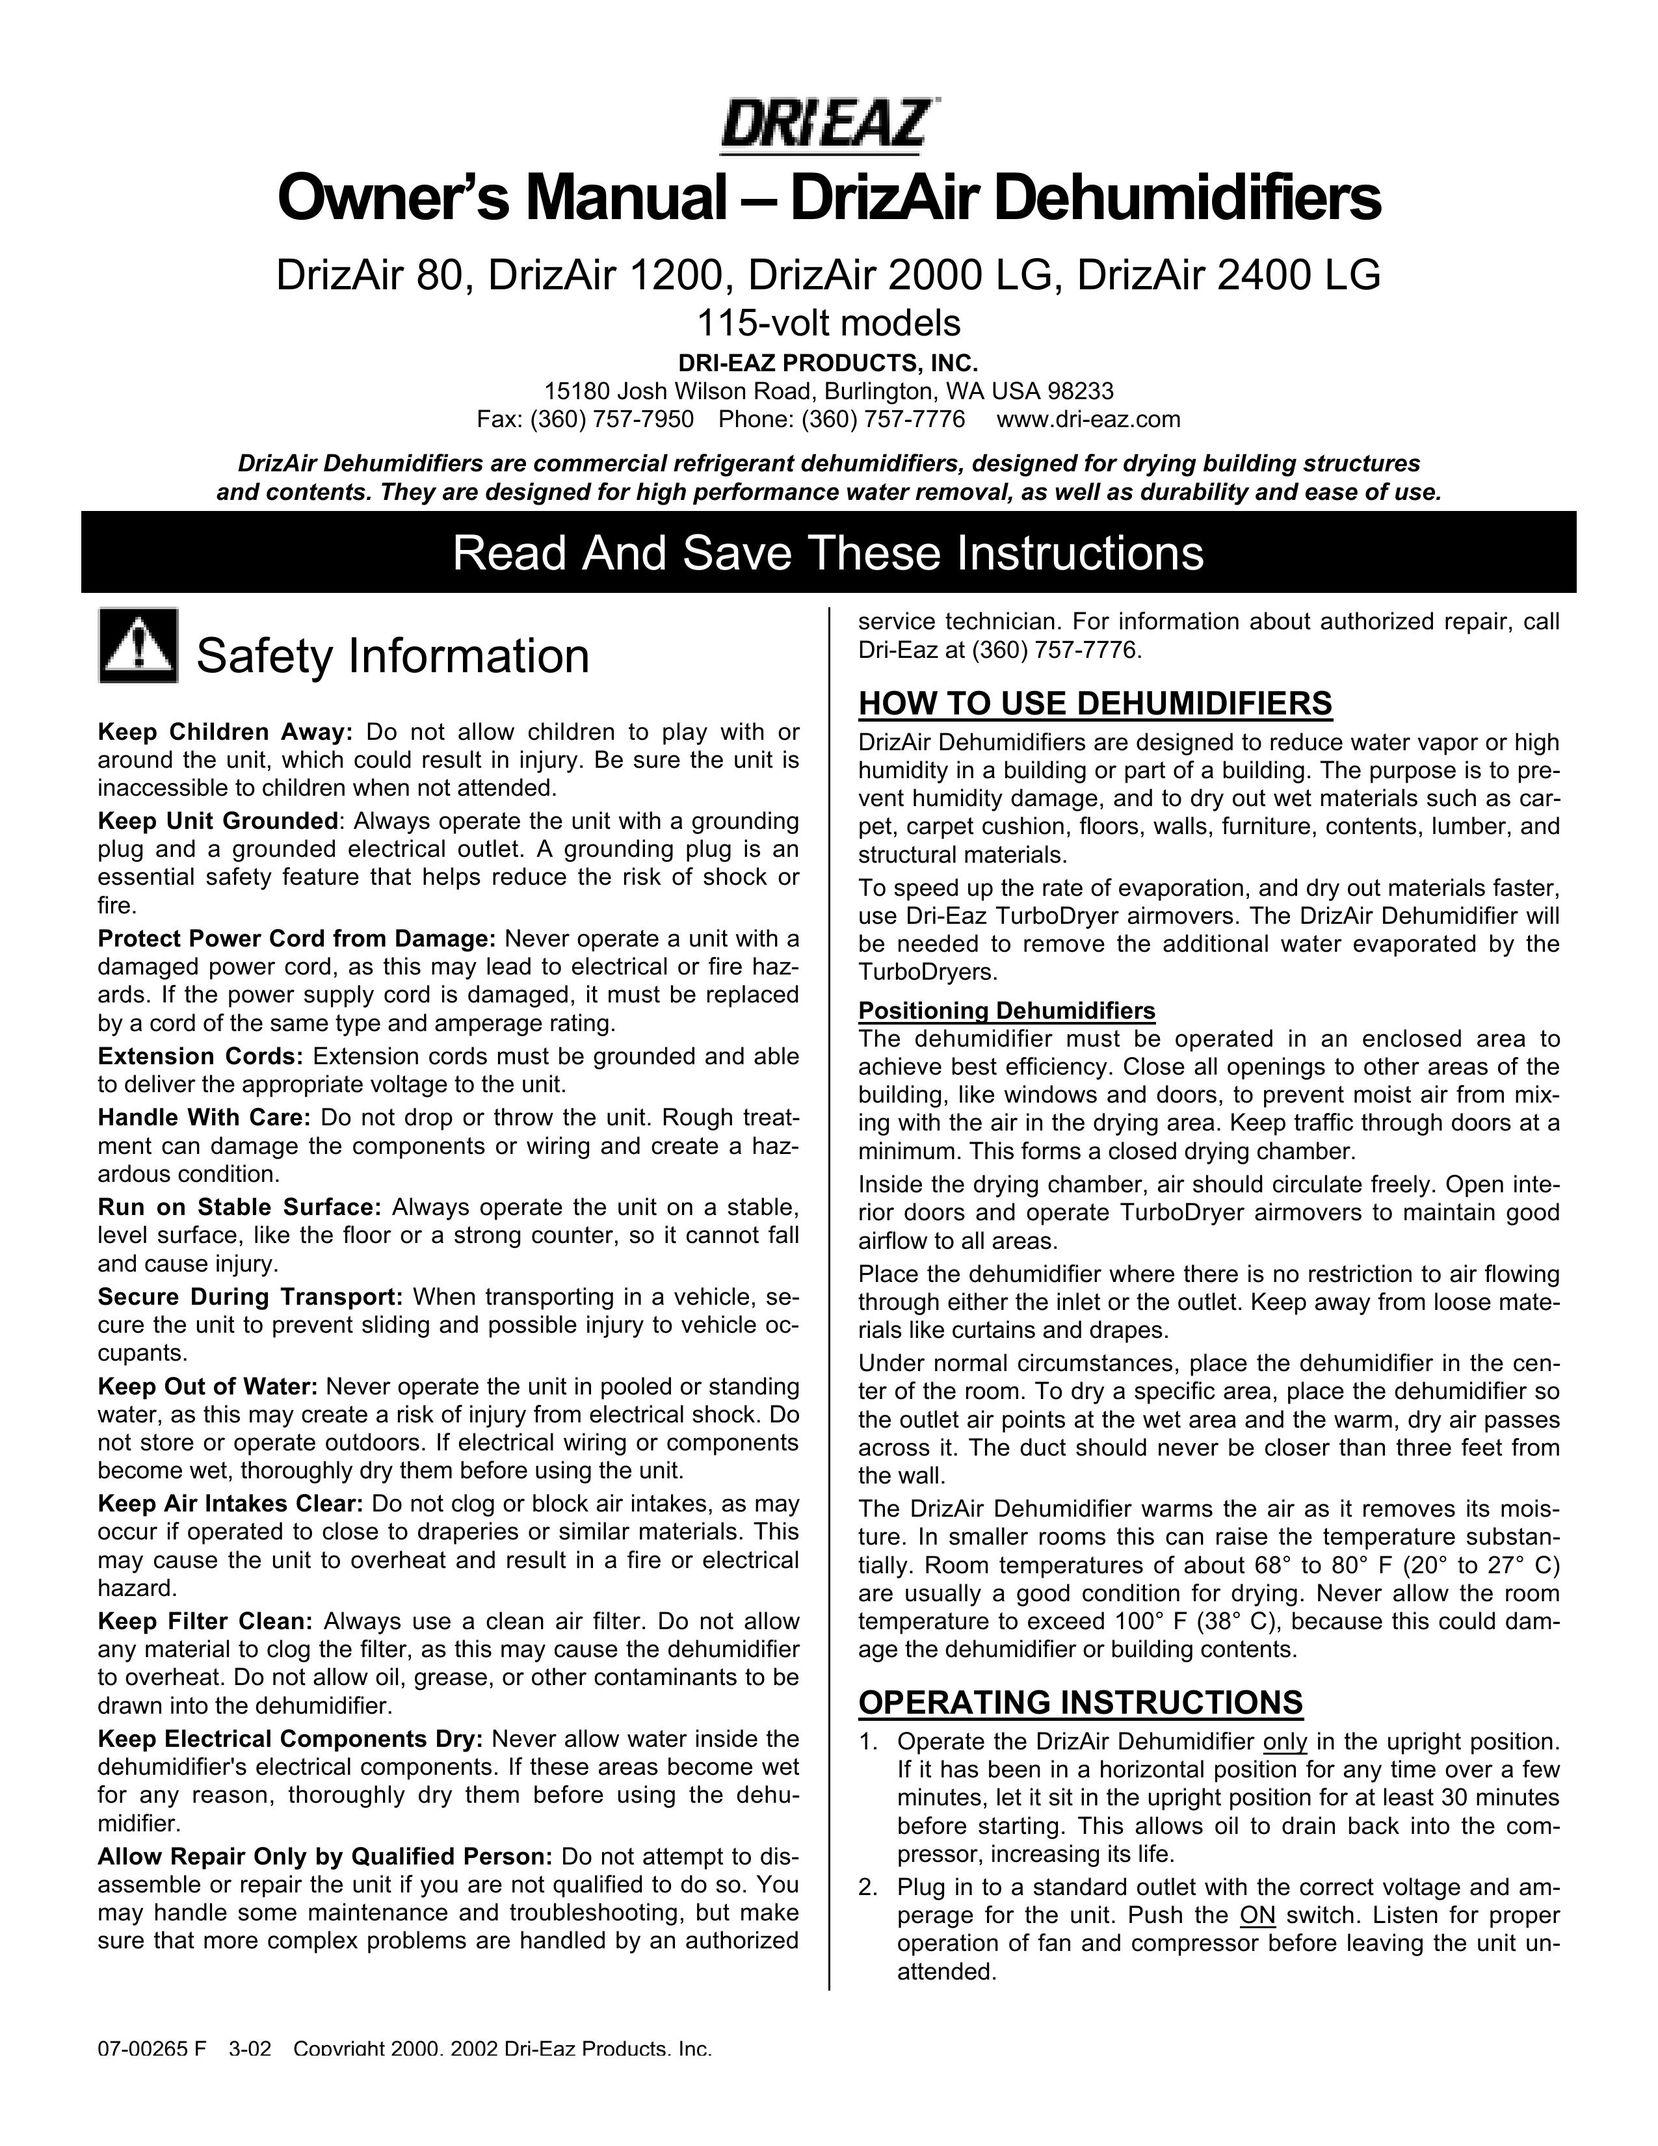 Dri-Eaz 2400 LG Dehumidifier User Manual